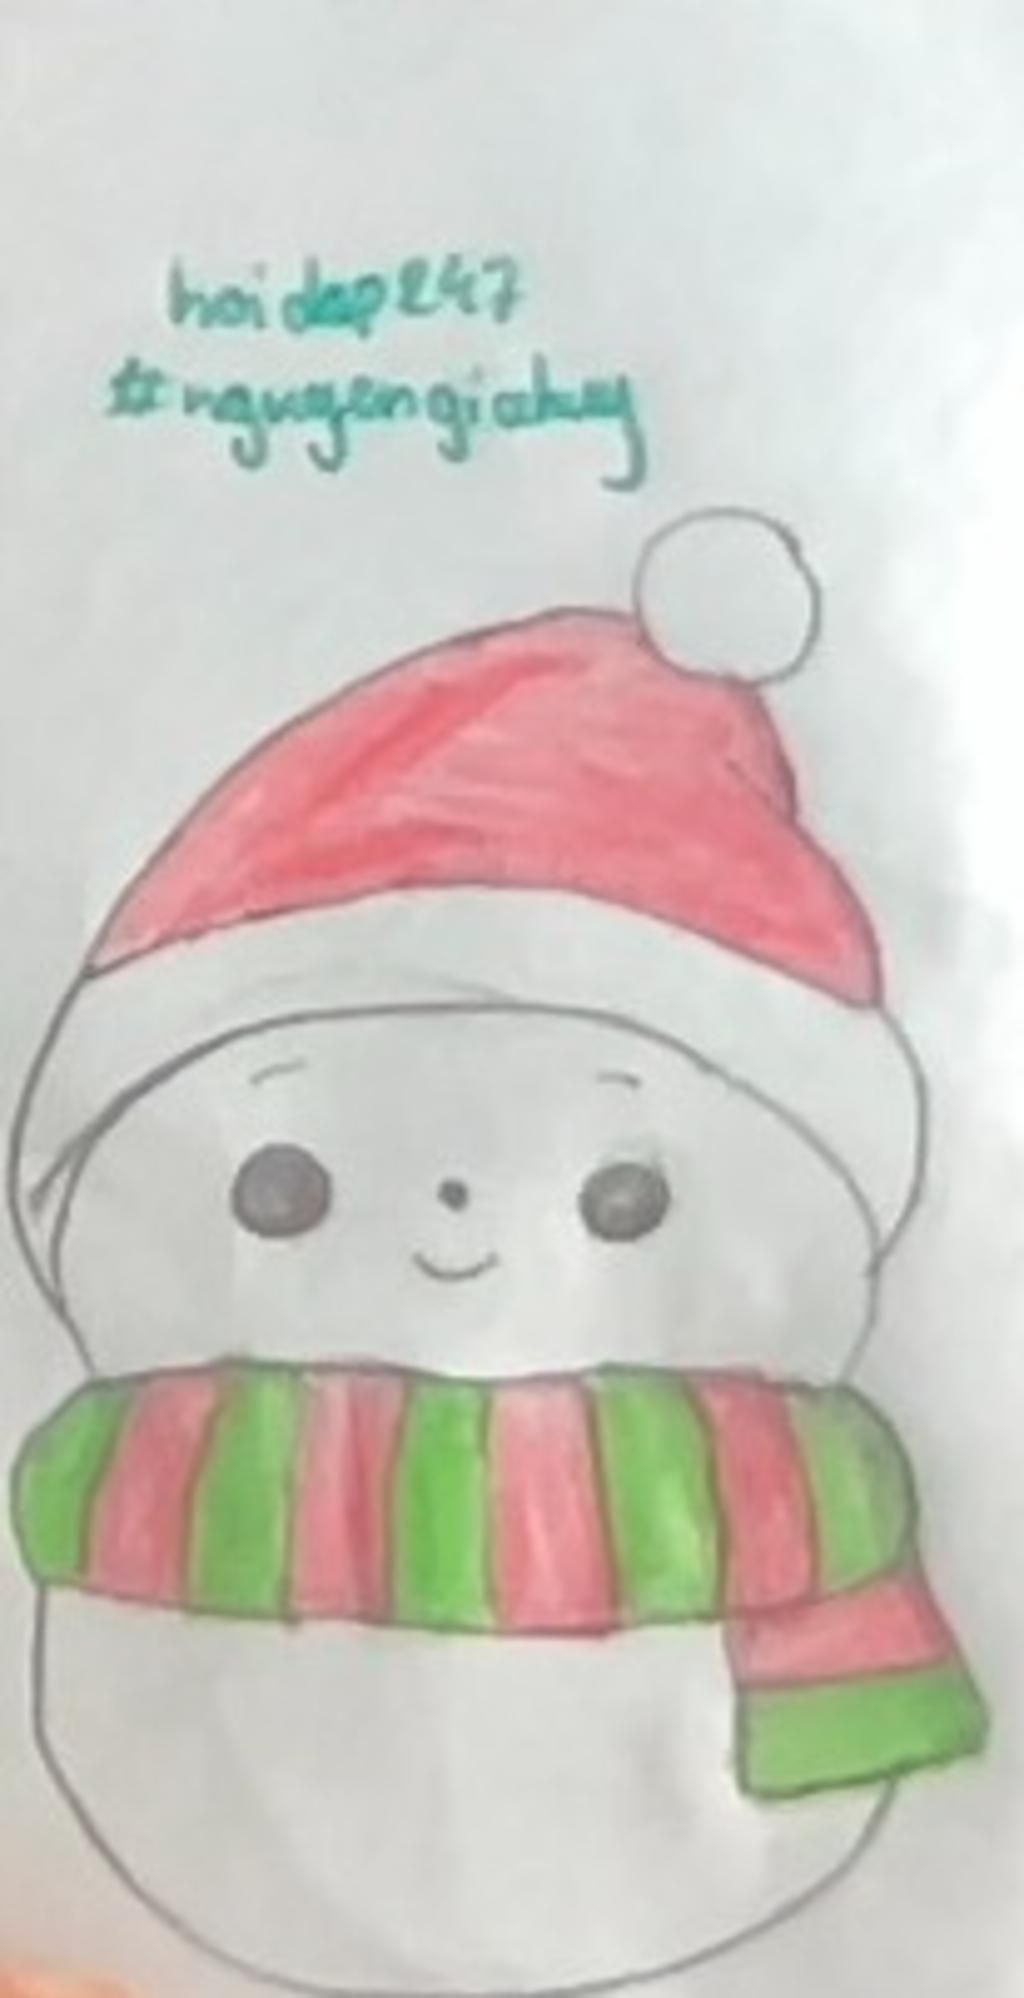 Vẽ Người Tuyết Cute (Cute Snowman Drawing) Bạn đang tìm kiếm những bức tranh vẽ người tuyết dễ thương để làm quà tặng cho bạn bè và người thân? Bức tranh này sẽ là lựa chọn tuyệt vời cho bạn. Những đường nét được vẽ tỉ mỉ tạo nên một người tuyết đáng yêu và hài hước. Hãy cùng nhau xem và cảm nhận tình cảm trong bức tranh này.